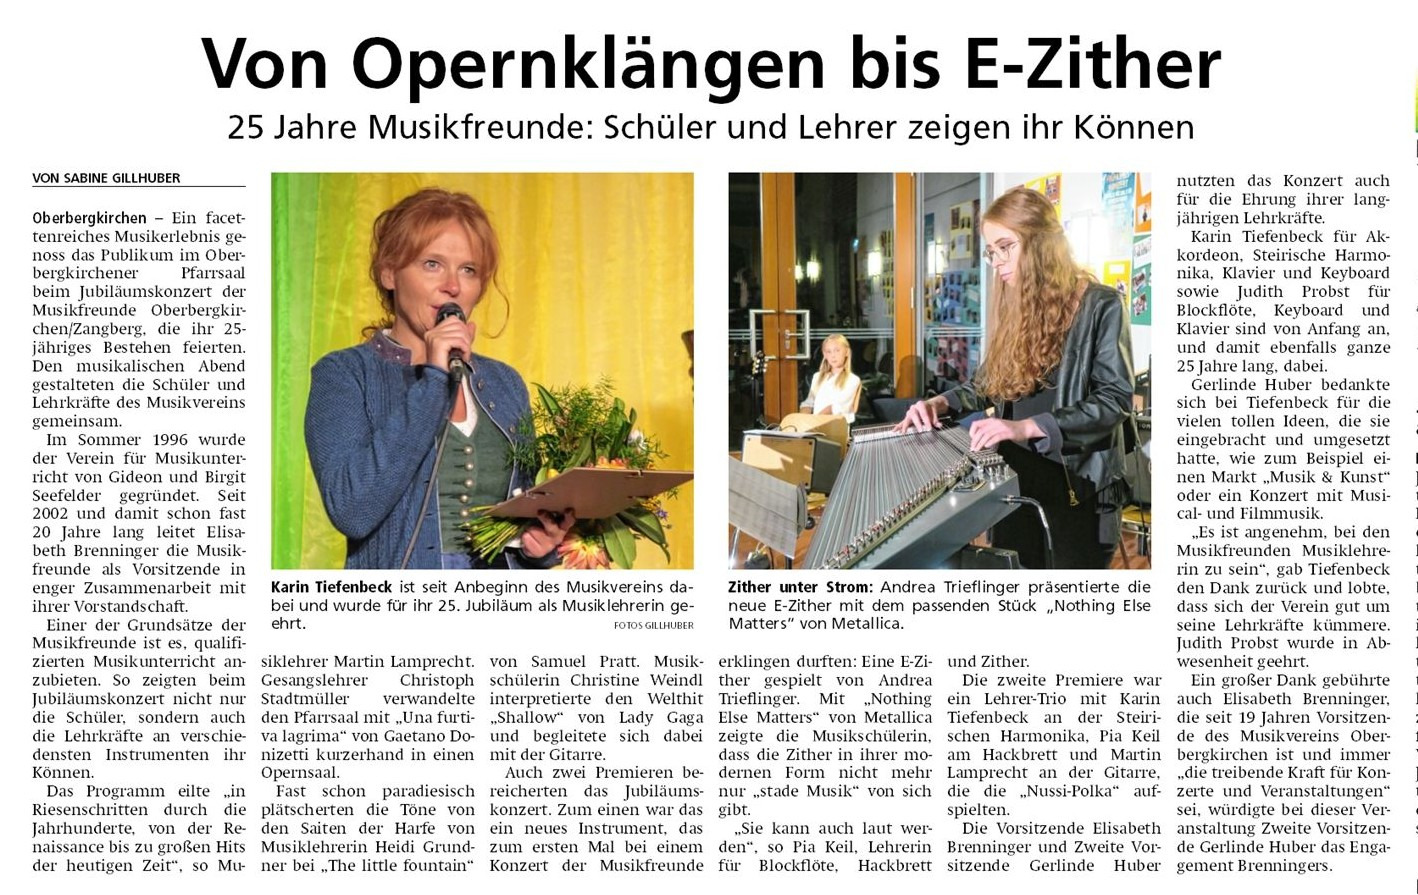 Jubiläumskonzert 25 Jahre Musikfreunde Oberbergkirchen-Zangberg 2. Oktober 2021